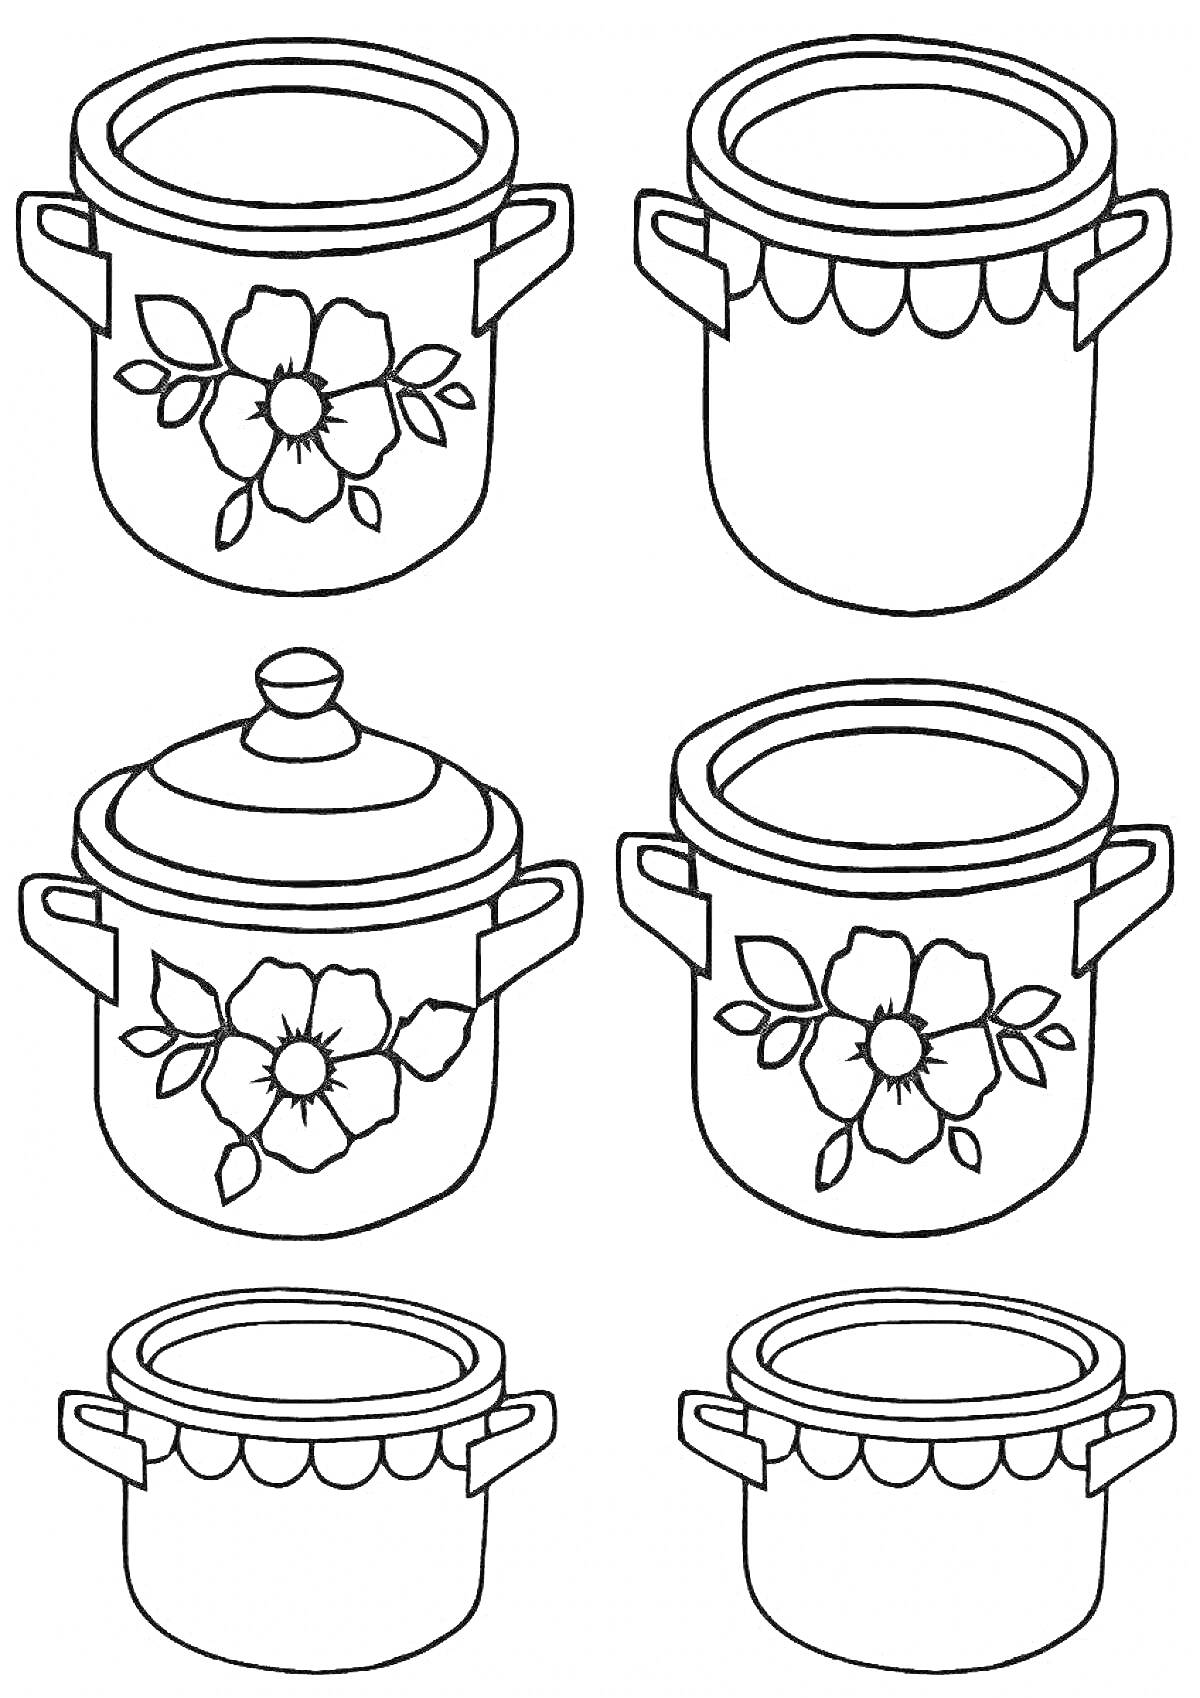 Раскраска Кастрюли с цветочным узором и варежки